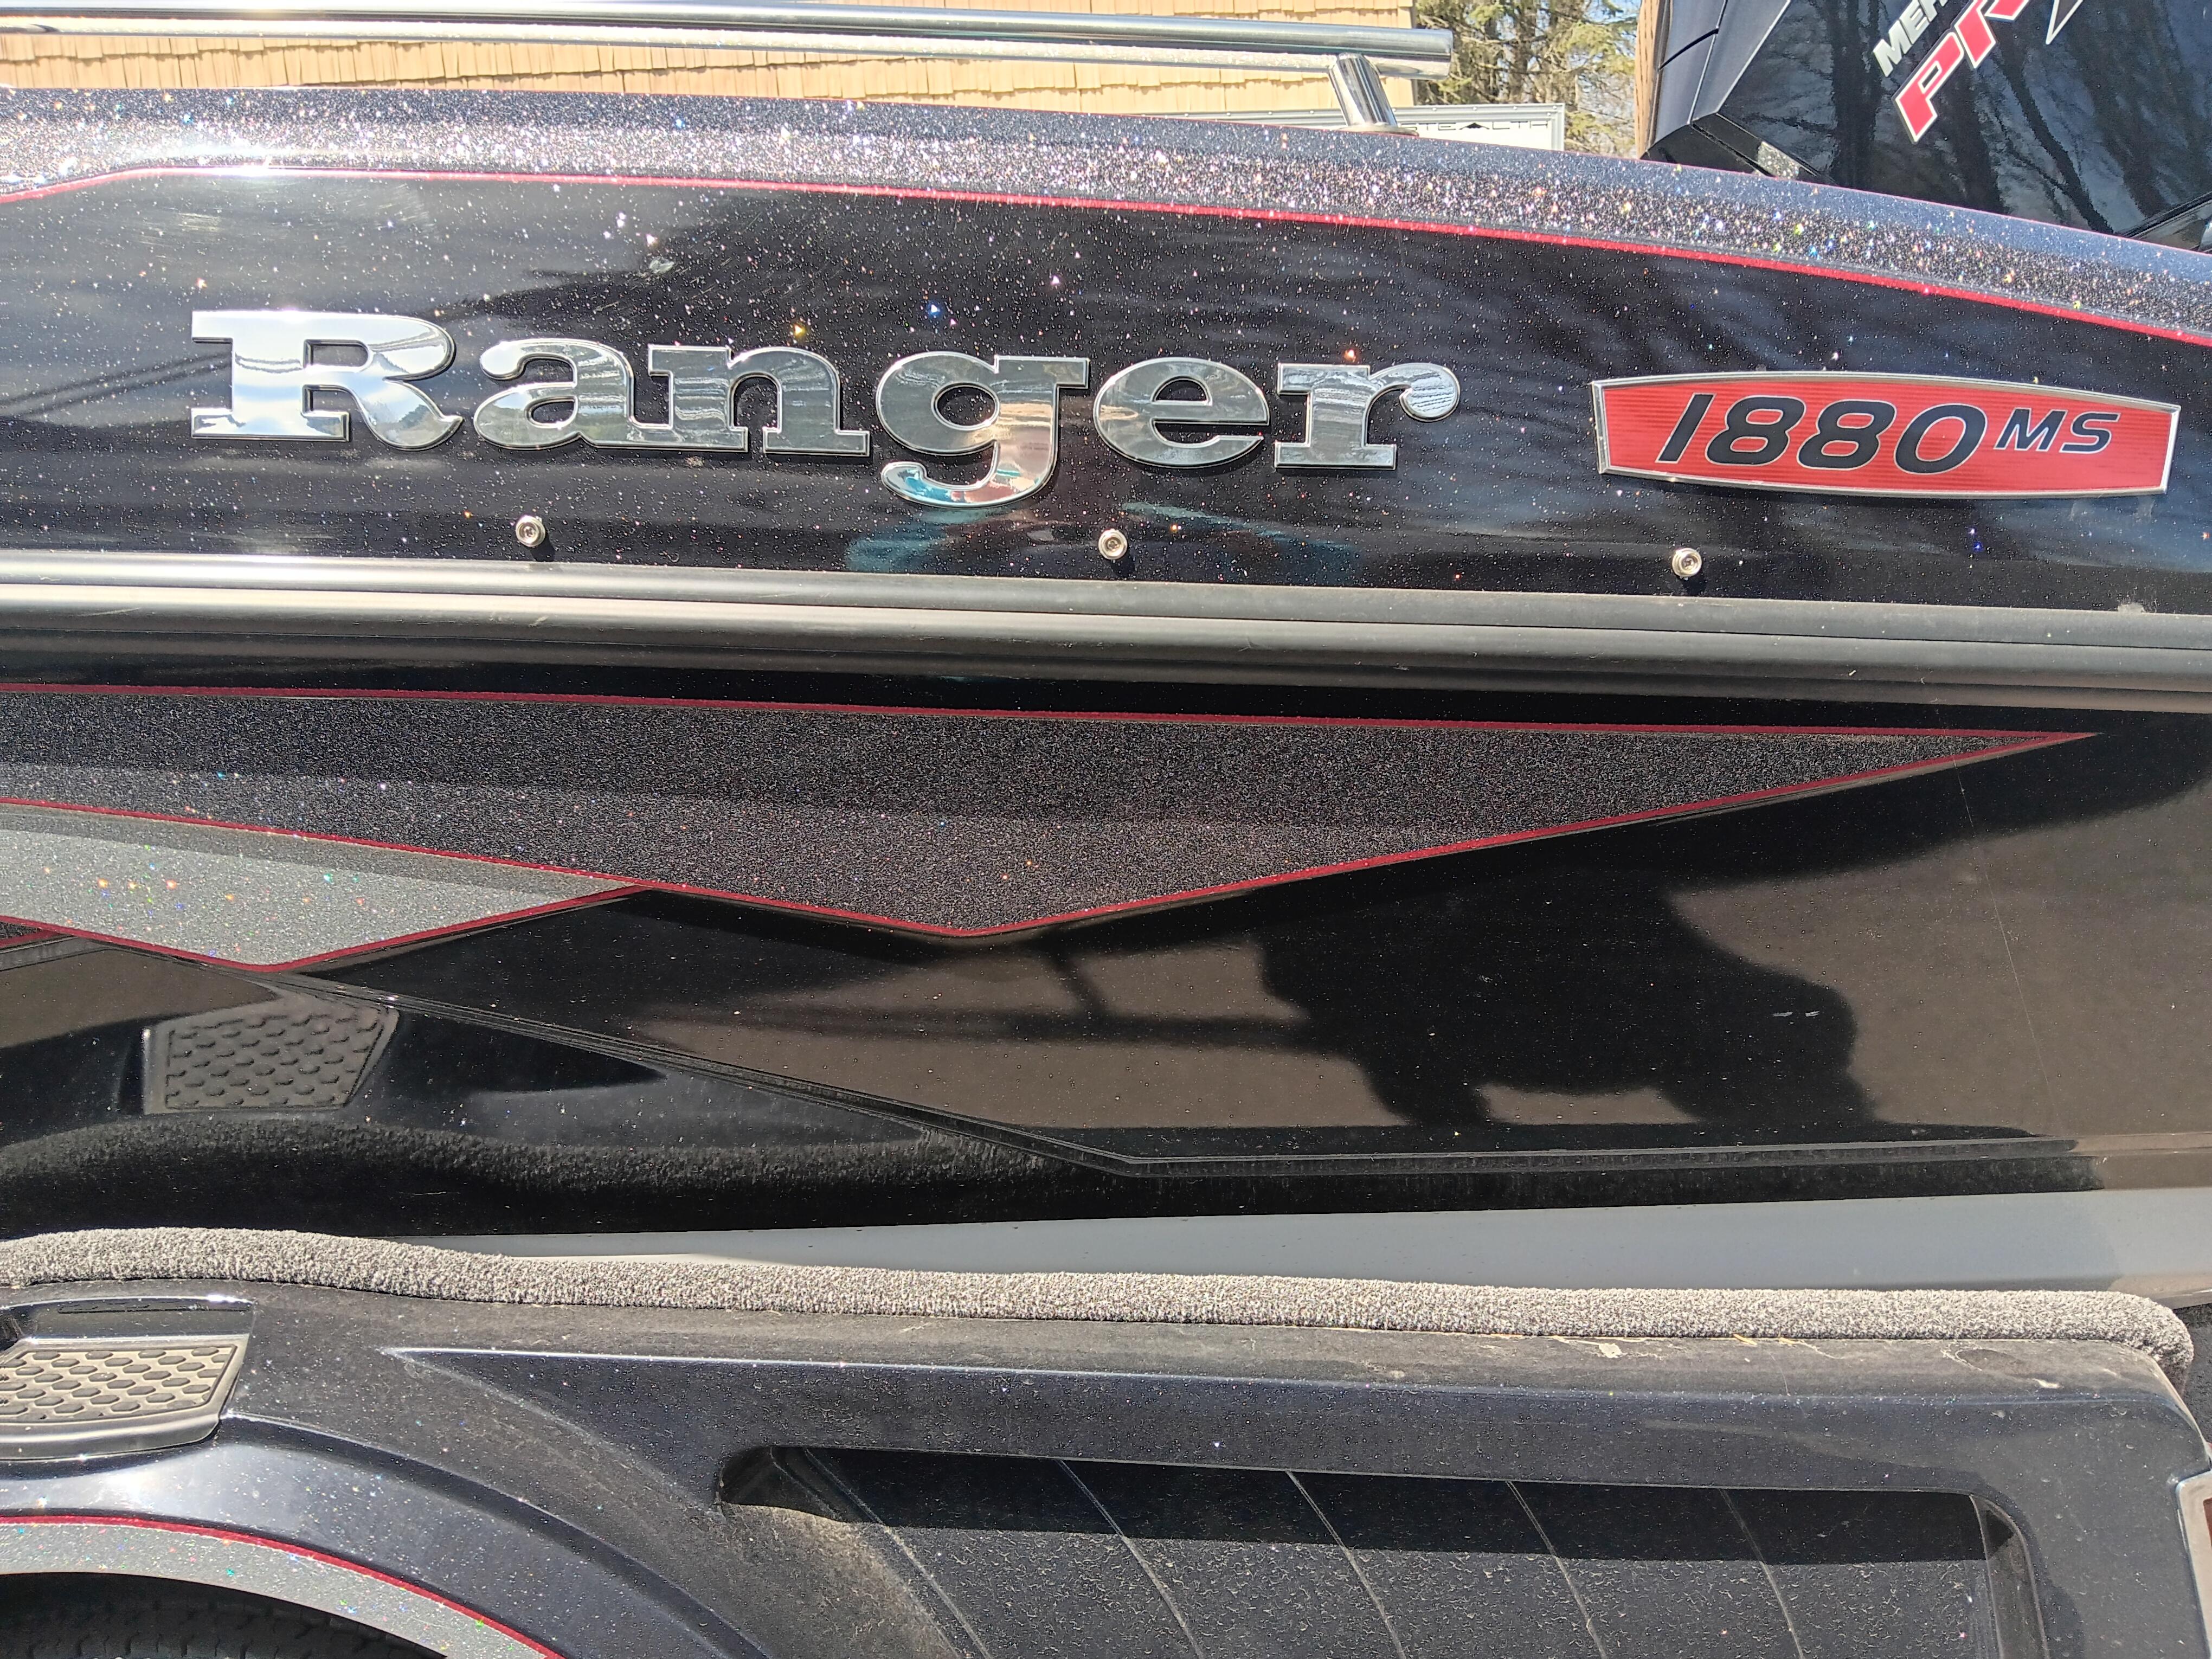 2021 Ranger 1880MS